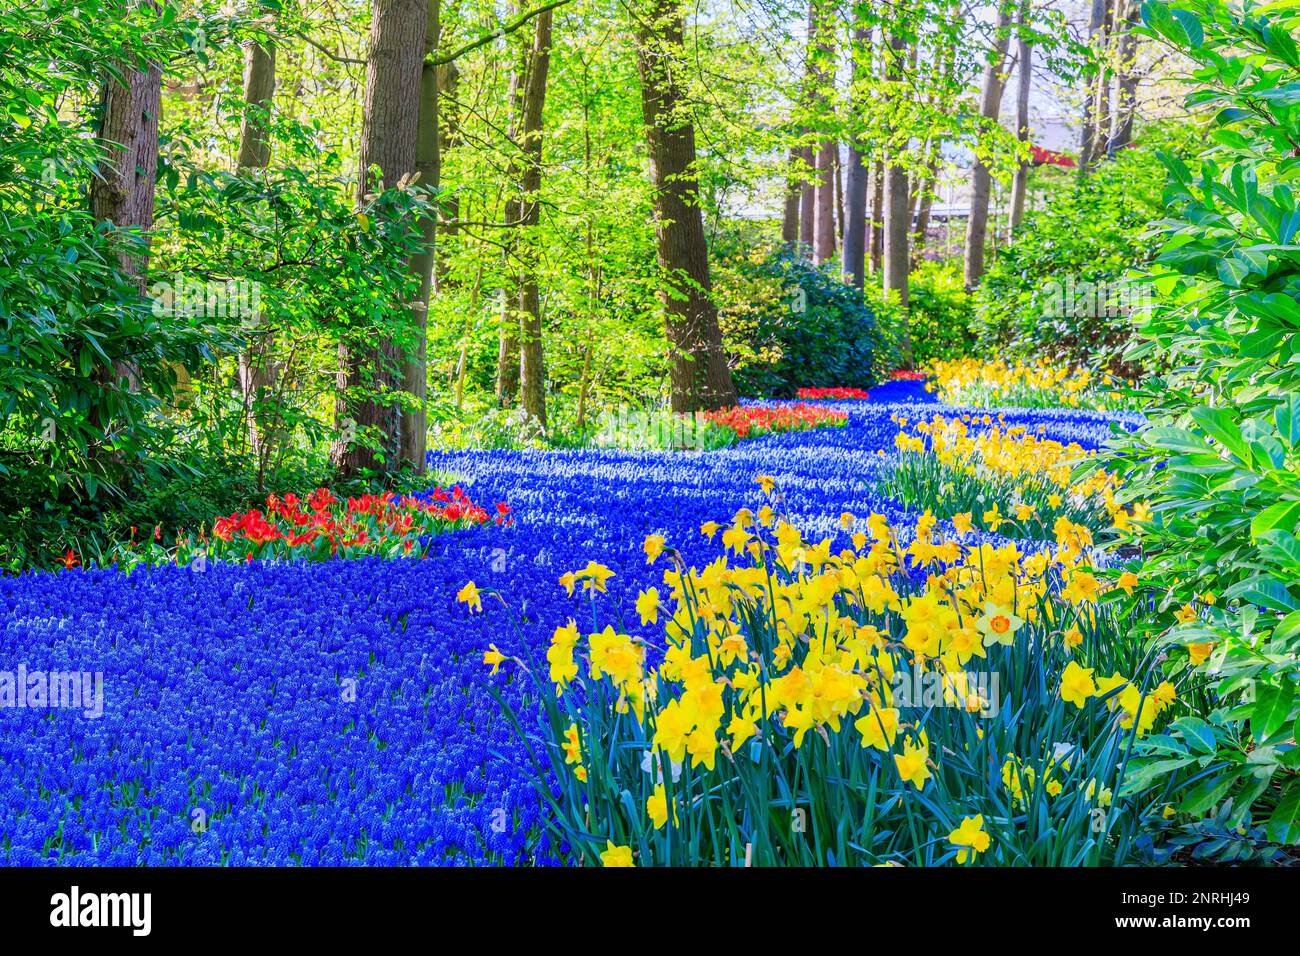 Fiorito colorato fiorito presso il giardino fiorito pubblico. Lisse, Olanda, Paesi Bassi. Foto Stock